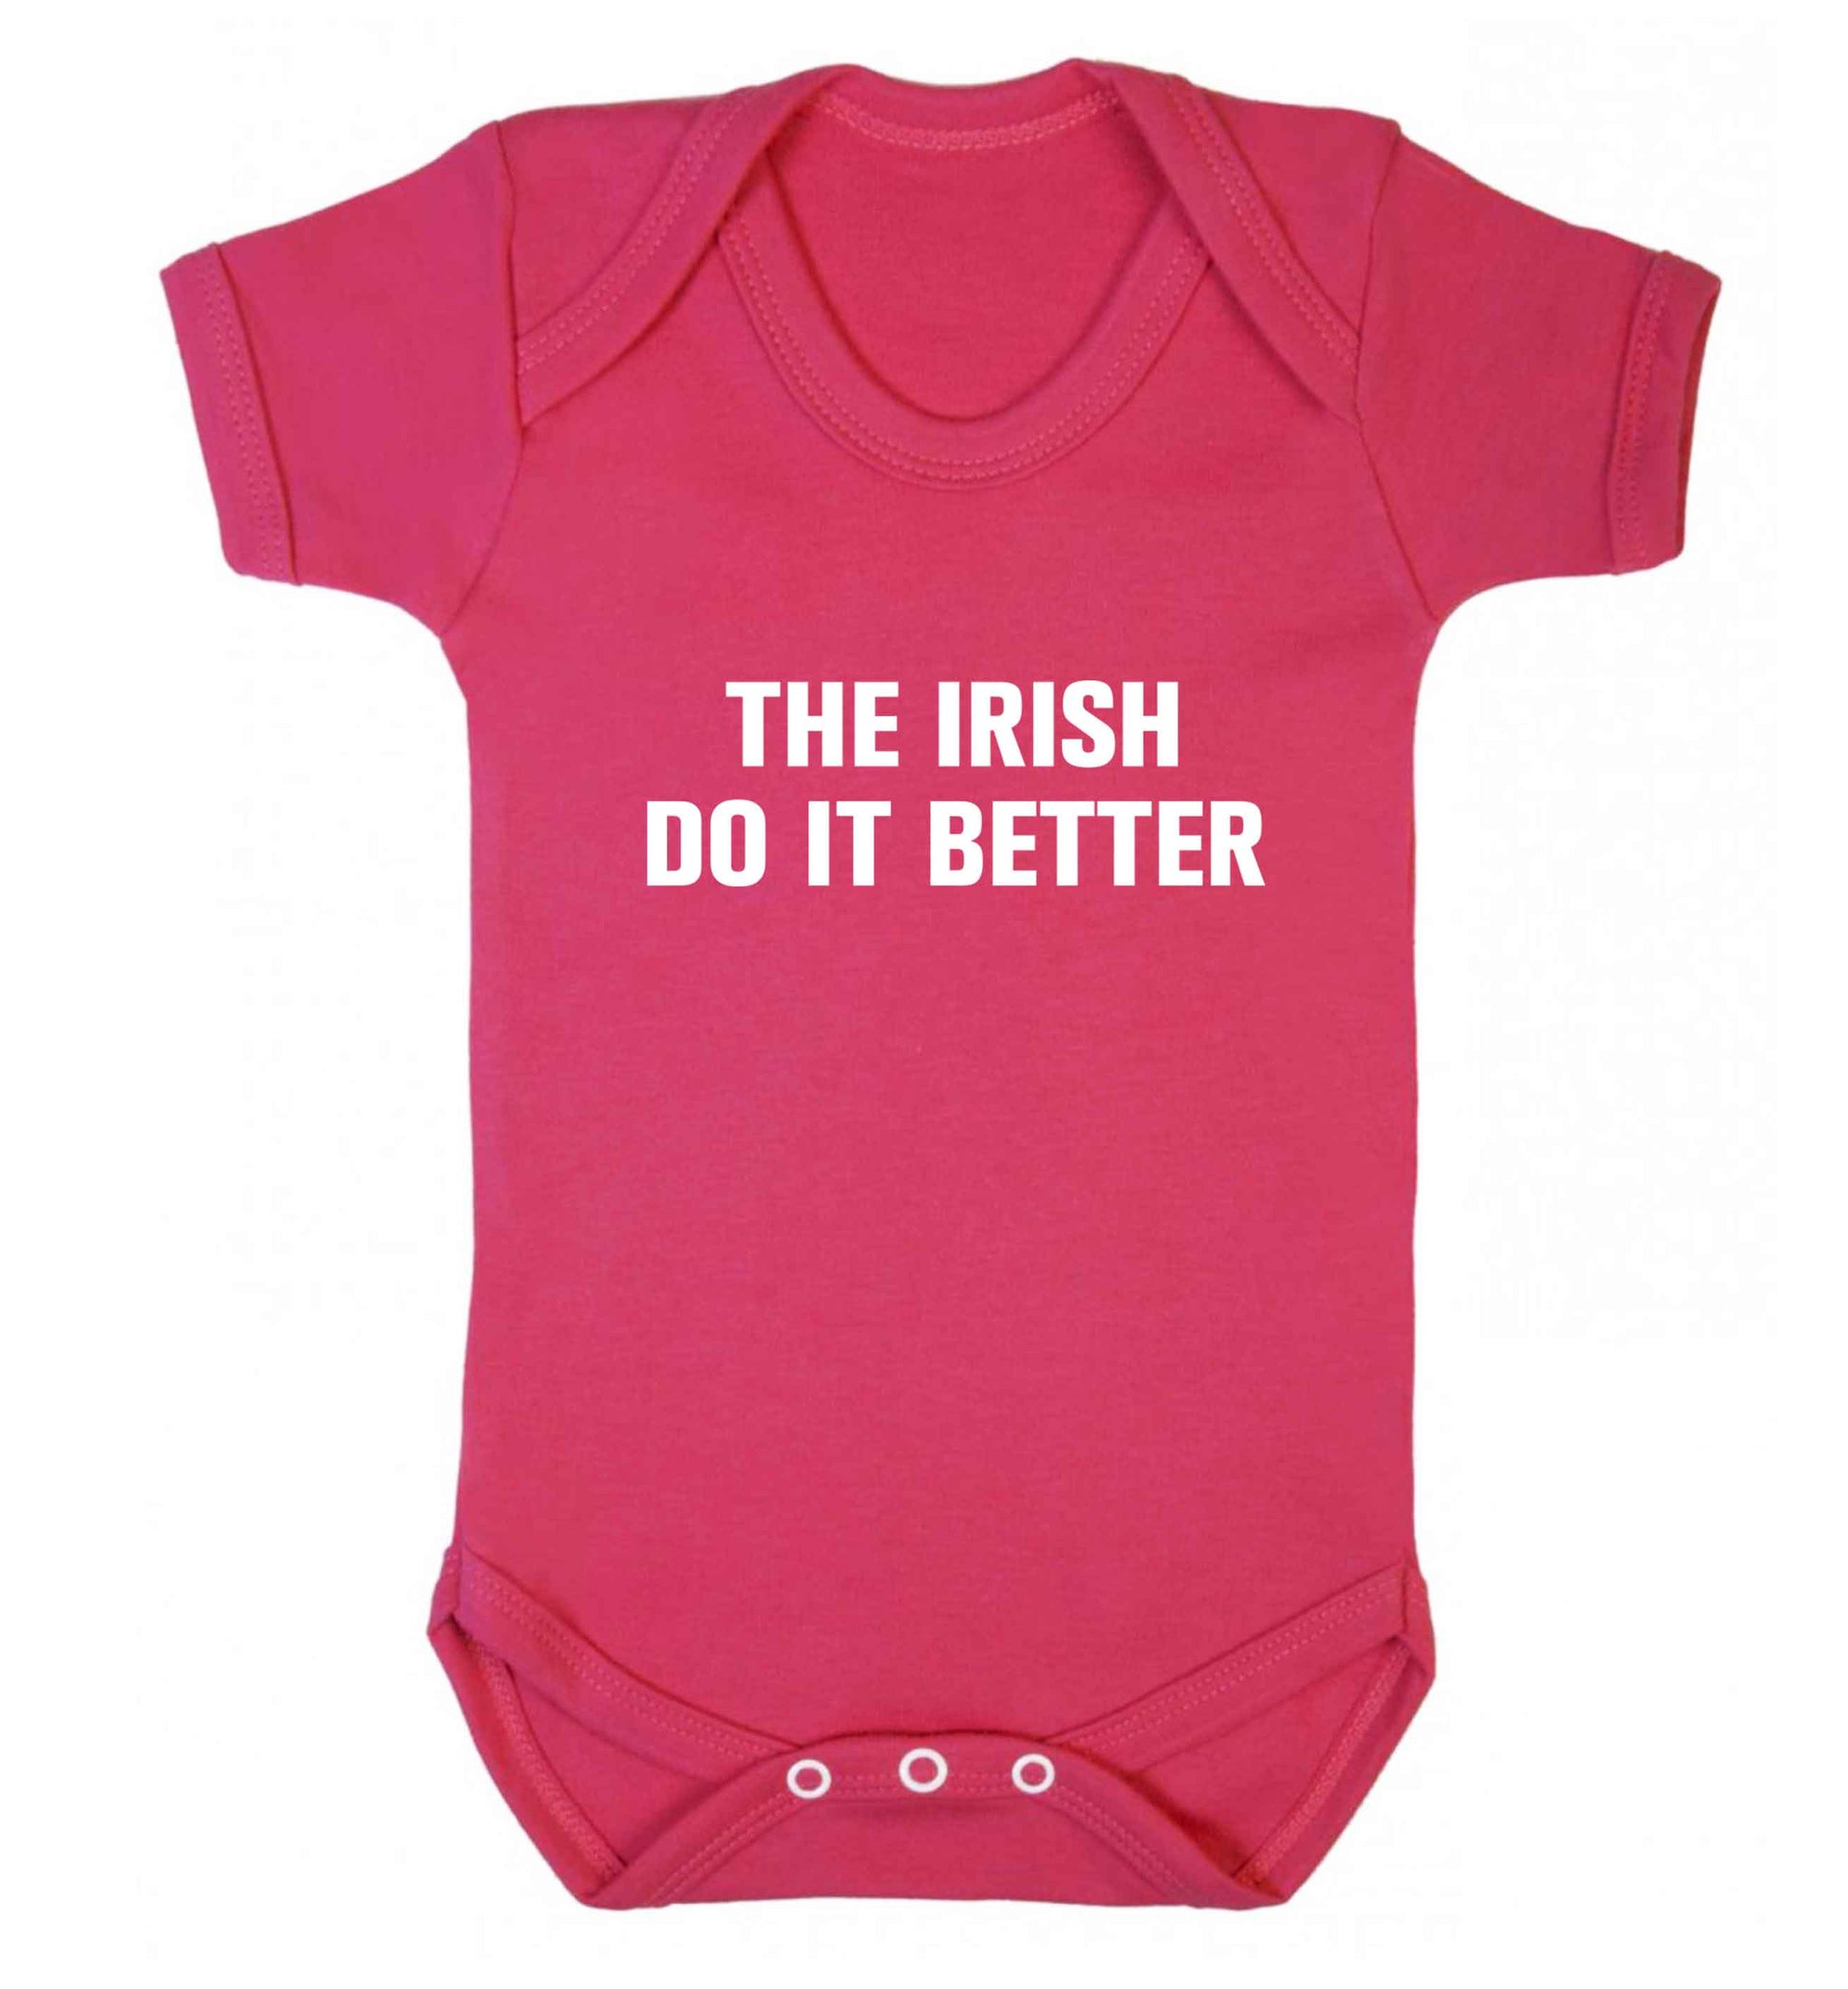 The Irish do it better baby vest dark pink 18-24 months